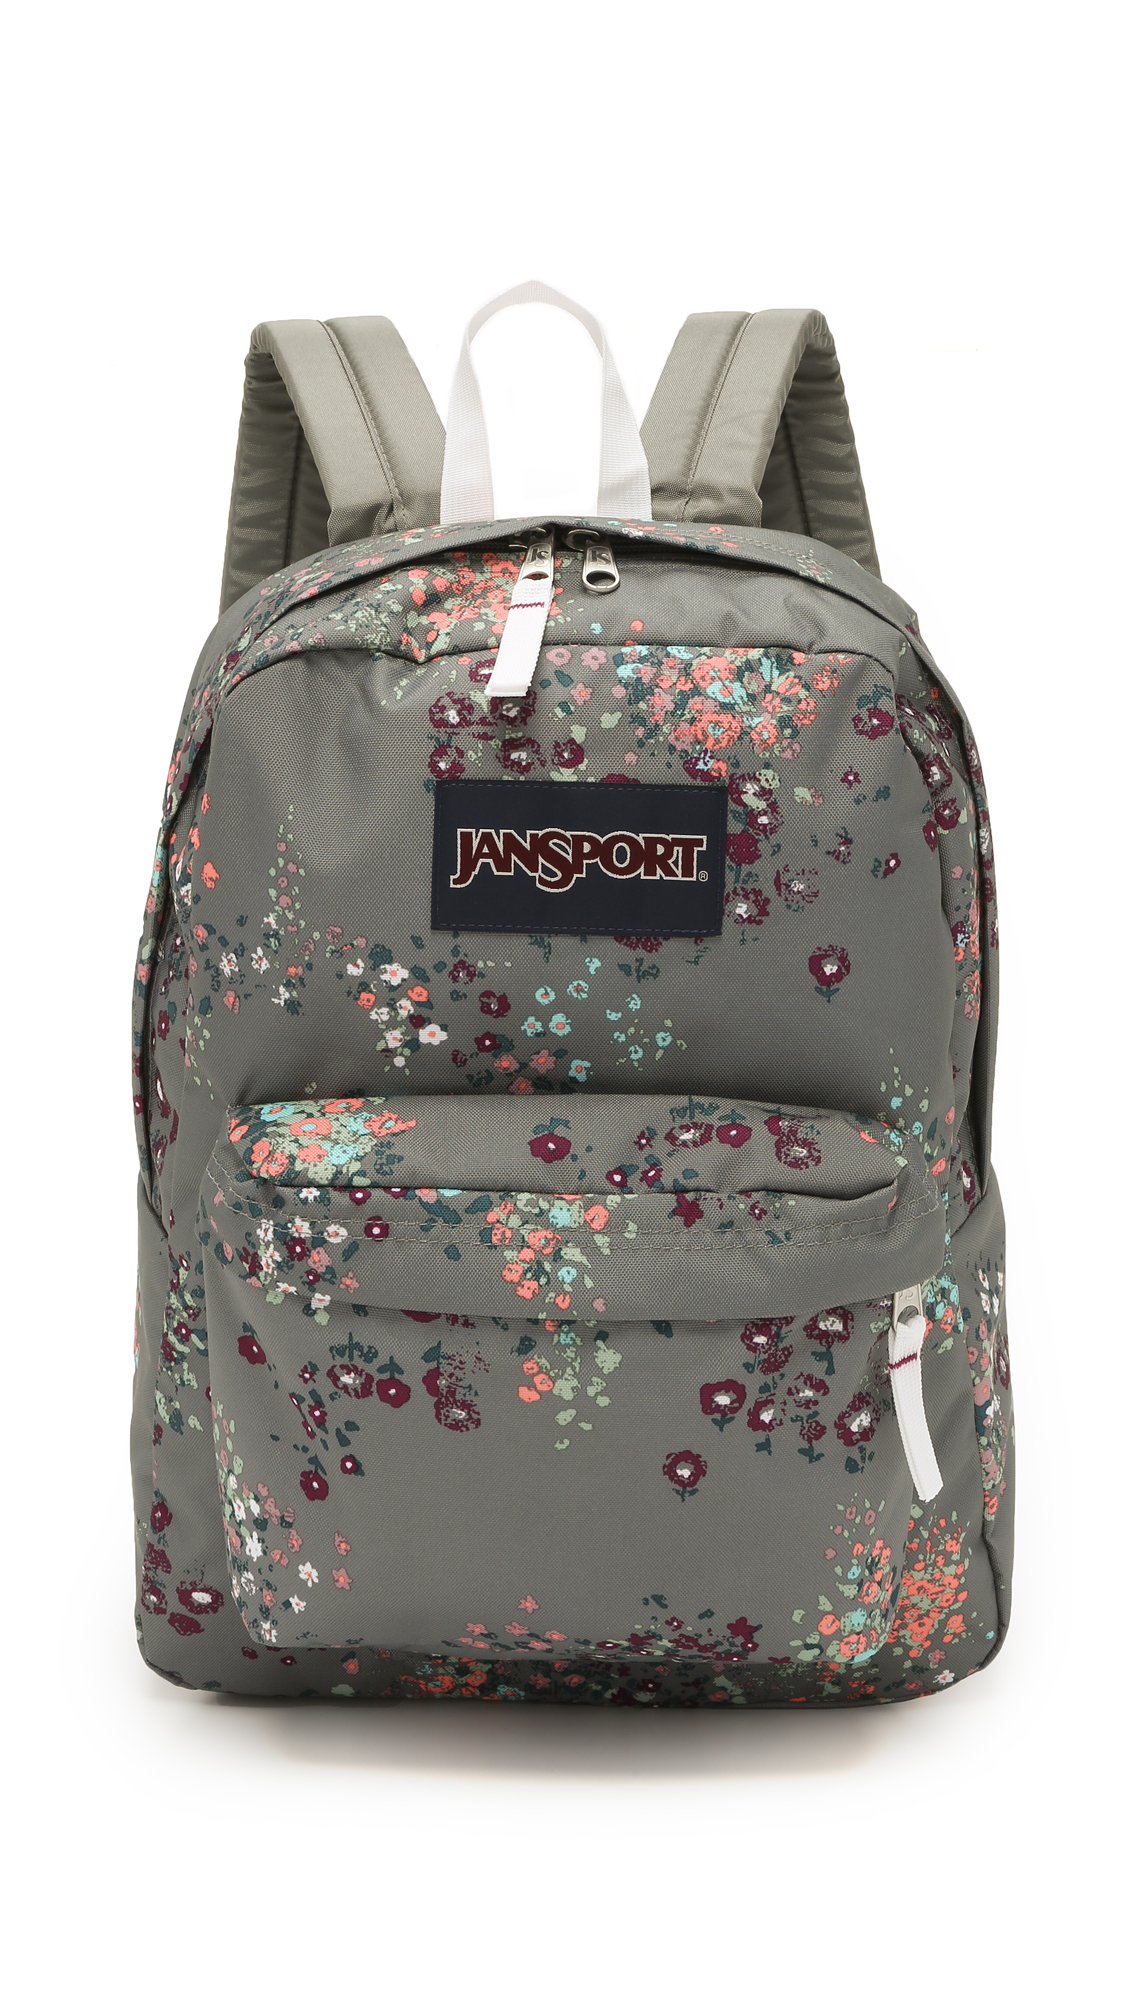 Jansport Superbreak Backpack - Shady Grey Sprinkled Floral in Gray - Lyst